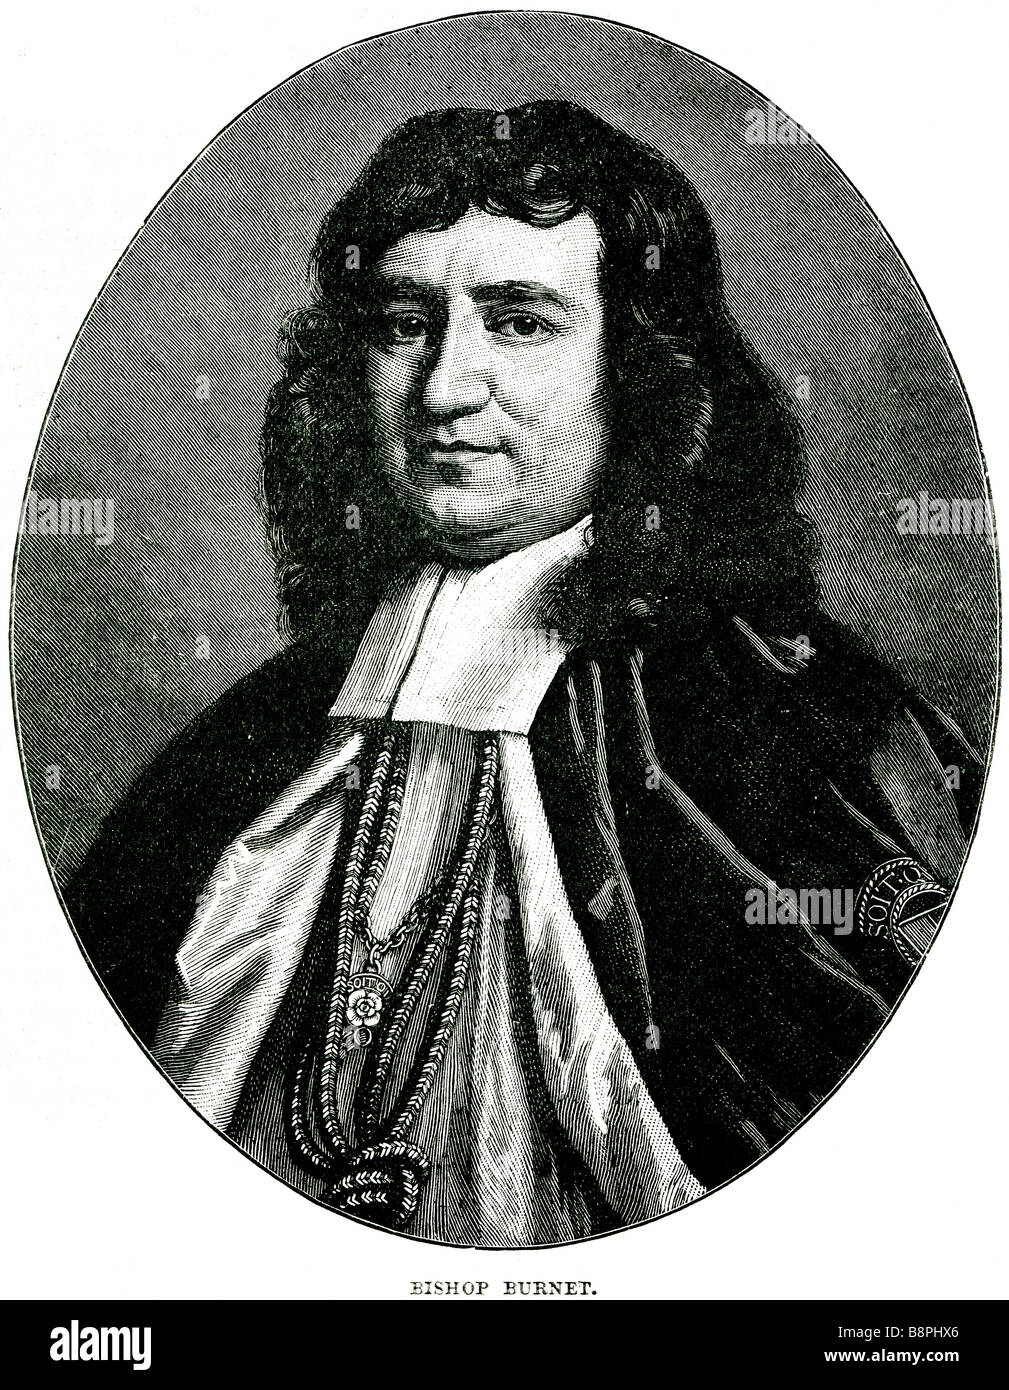 Gilbert Burnet (18 de septiembre de 1643 - 17 de marzo de 1715) fue un teólogo e historiador escocés, y obispo de Salisbury. Fue fl Foto de stock